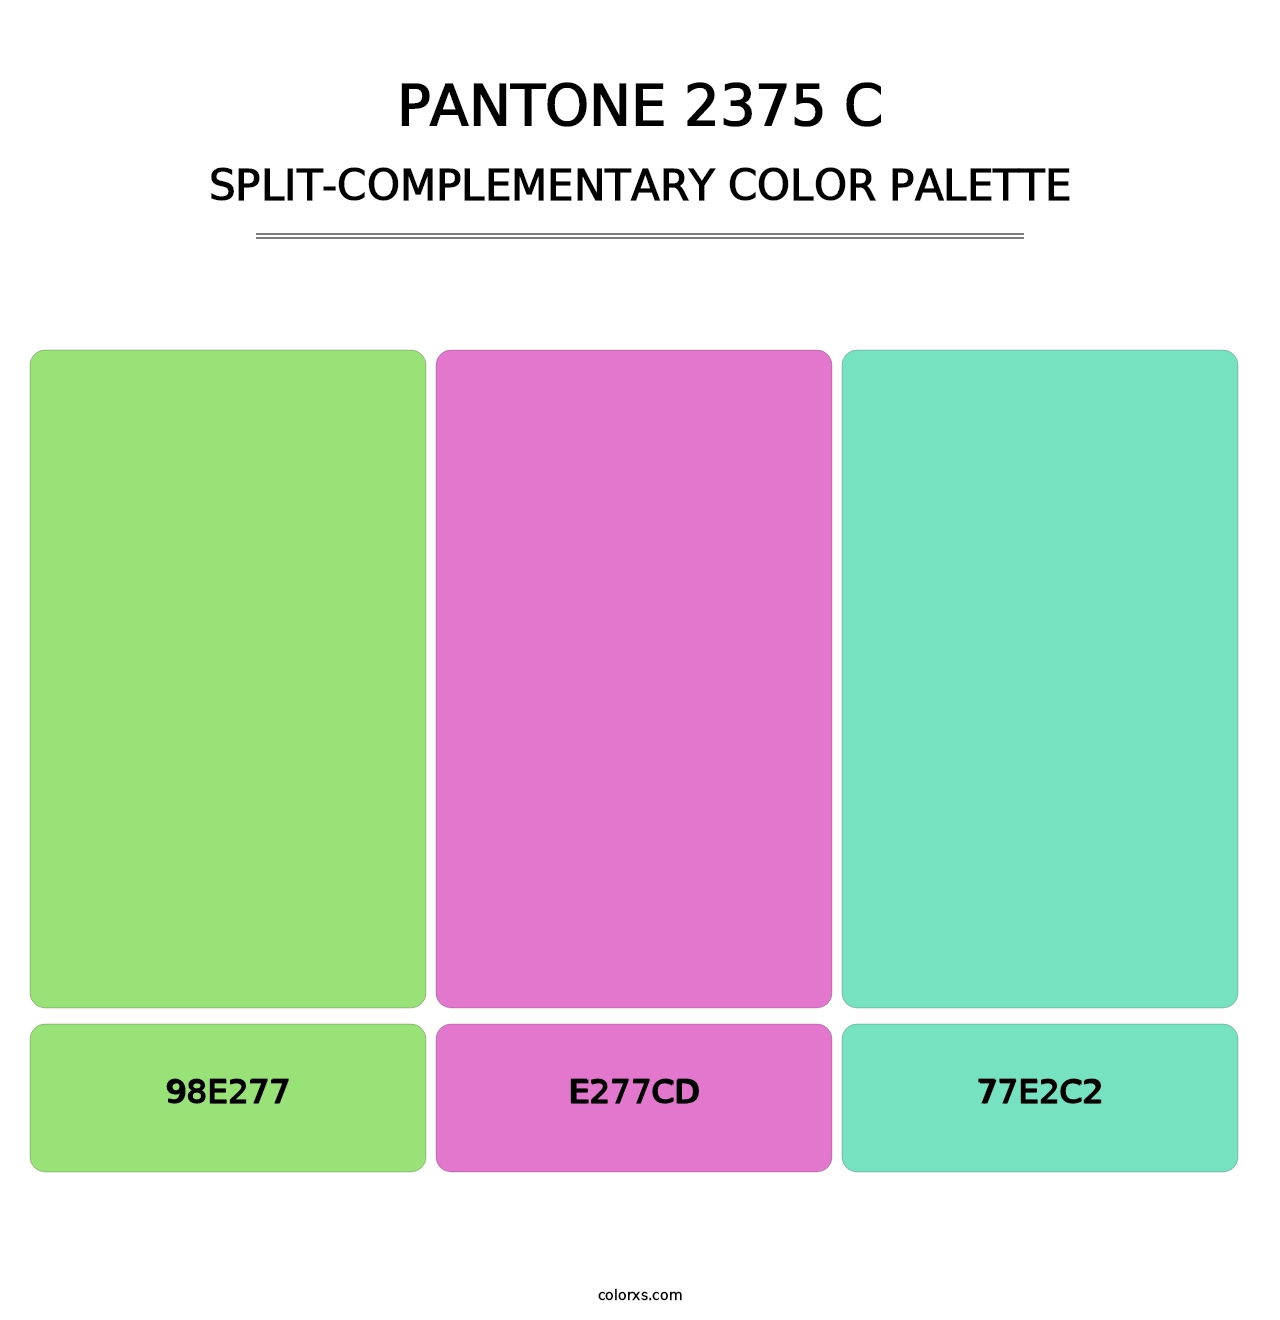 PANTONE 2375 C - Split-Complementary Color Palette